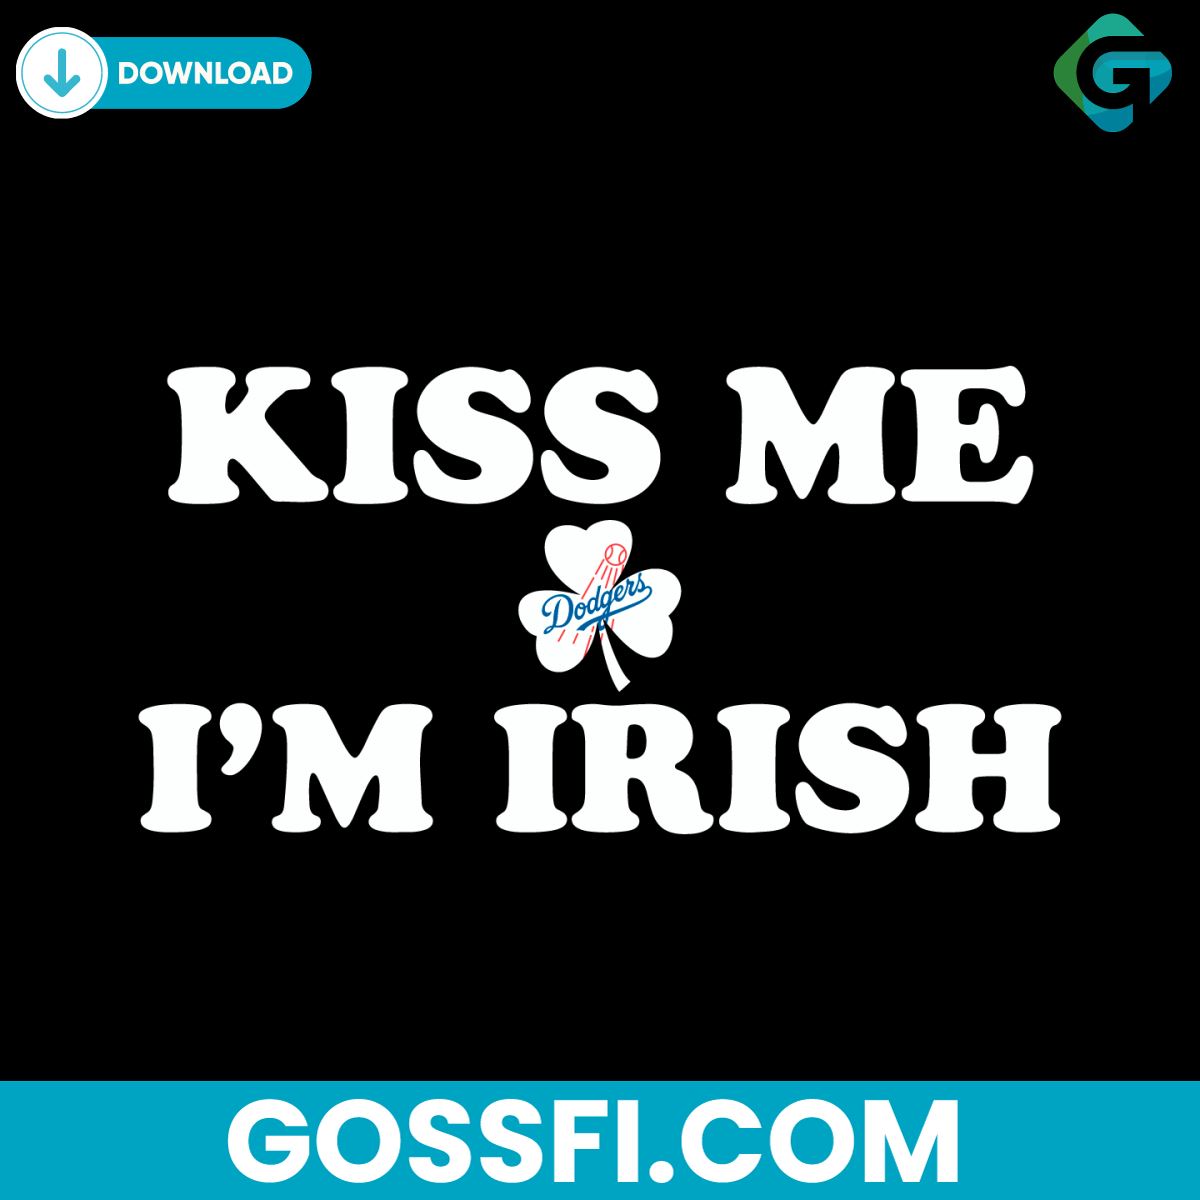 kiss-me-im-irish-los-angeles-dodgers-1883-svg-digital-download